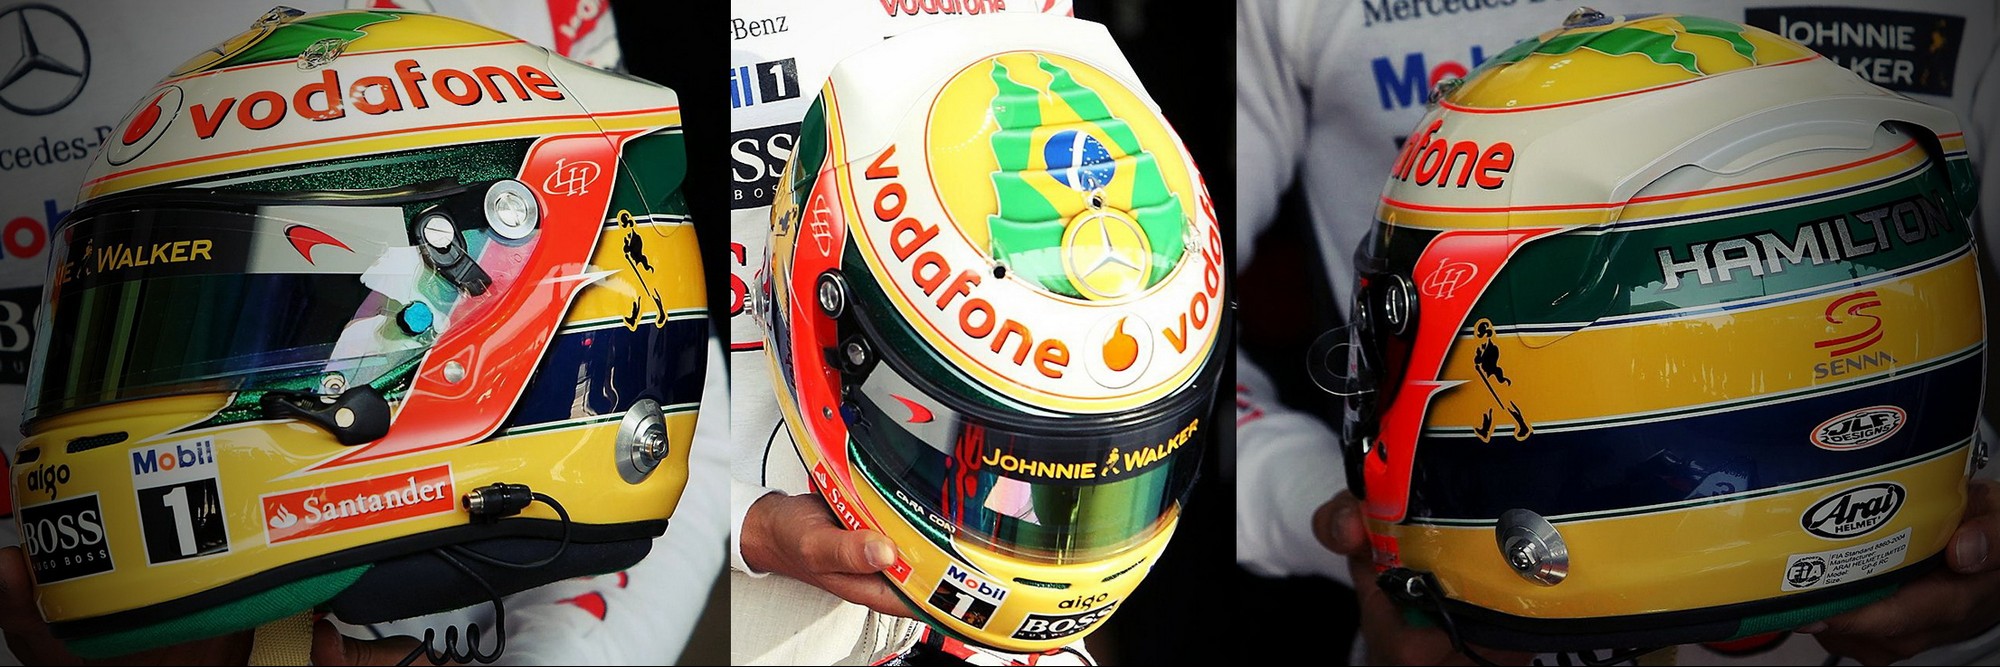 Шлем Льюиса Хэмилтона на Гран-При Бразилии 2011 | 2011 Brazilian Grand Prix helmet of Lewis Hamilton